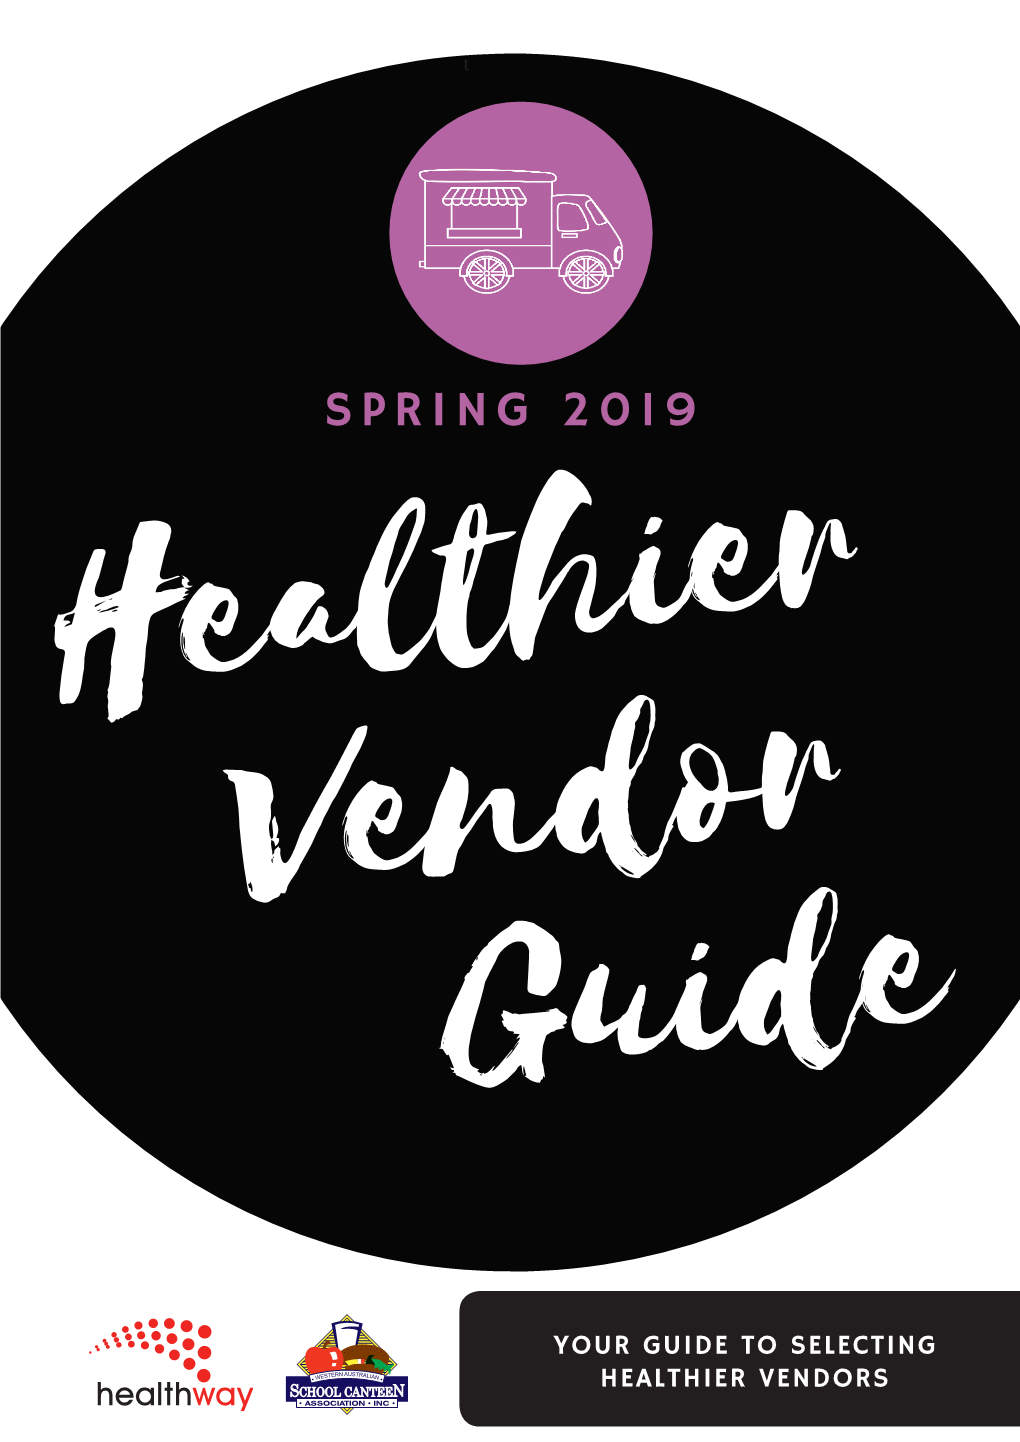 SPRING 2019 Healthier Vendor Guide